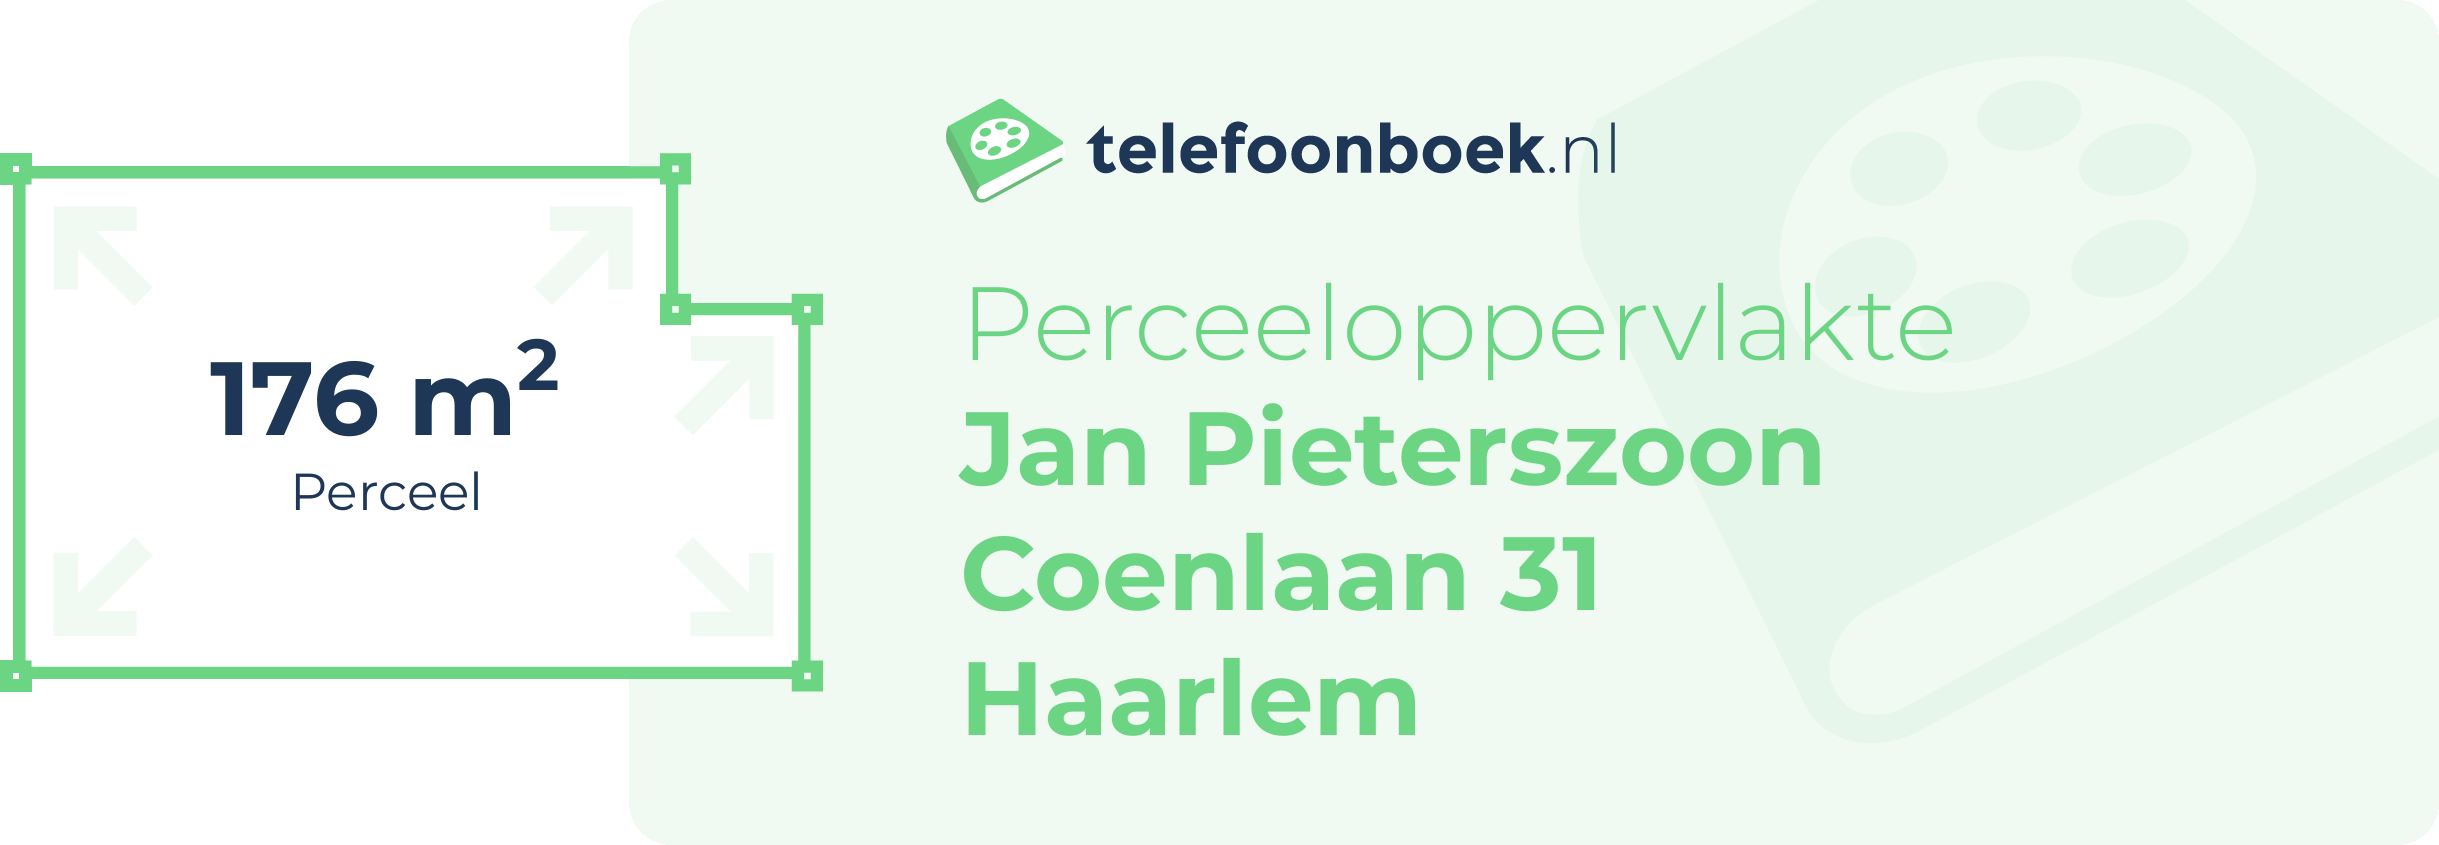 Perceeloppervlakte Jan Pieterszoon Coenlaan 31 Haarlem